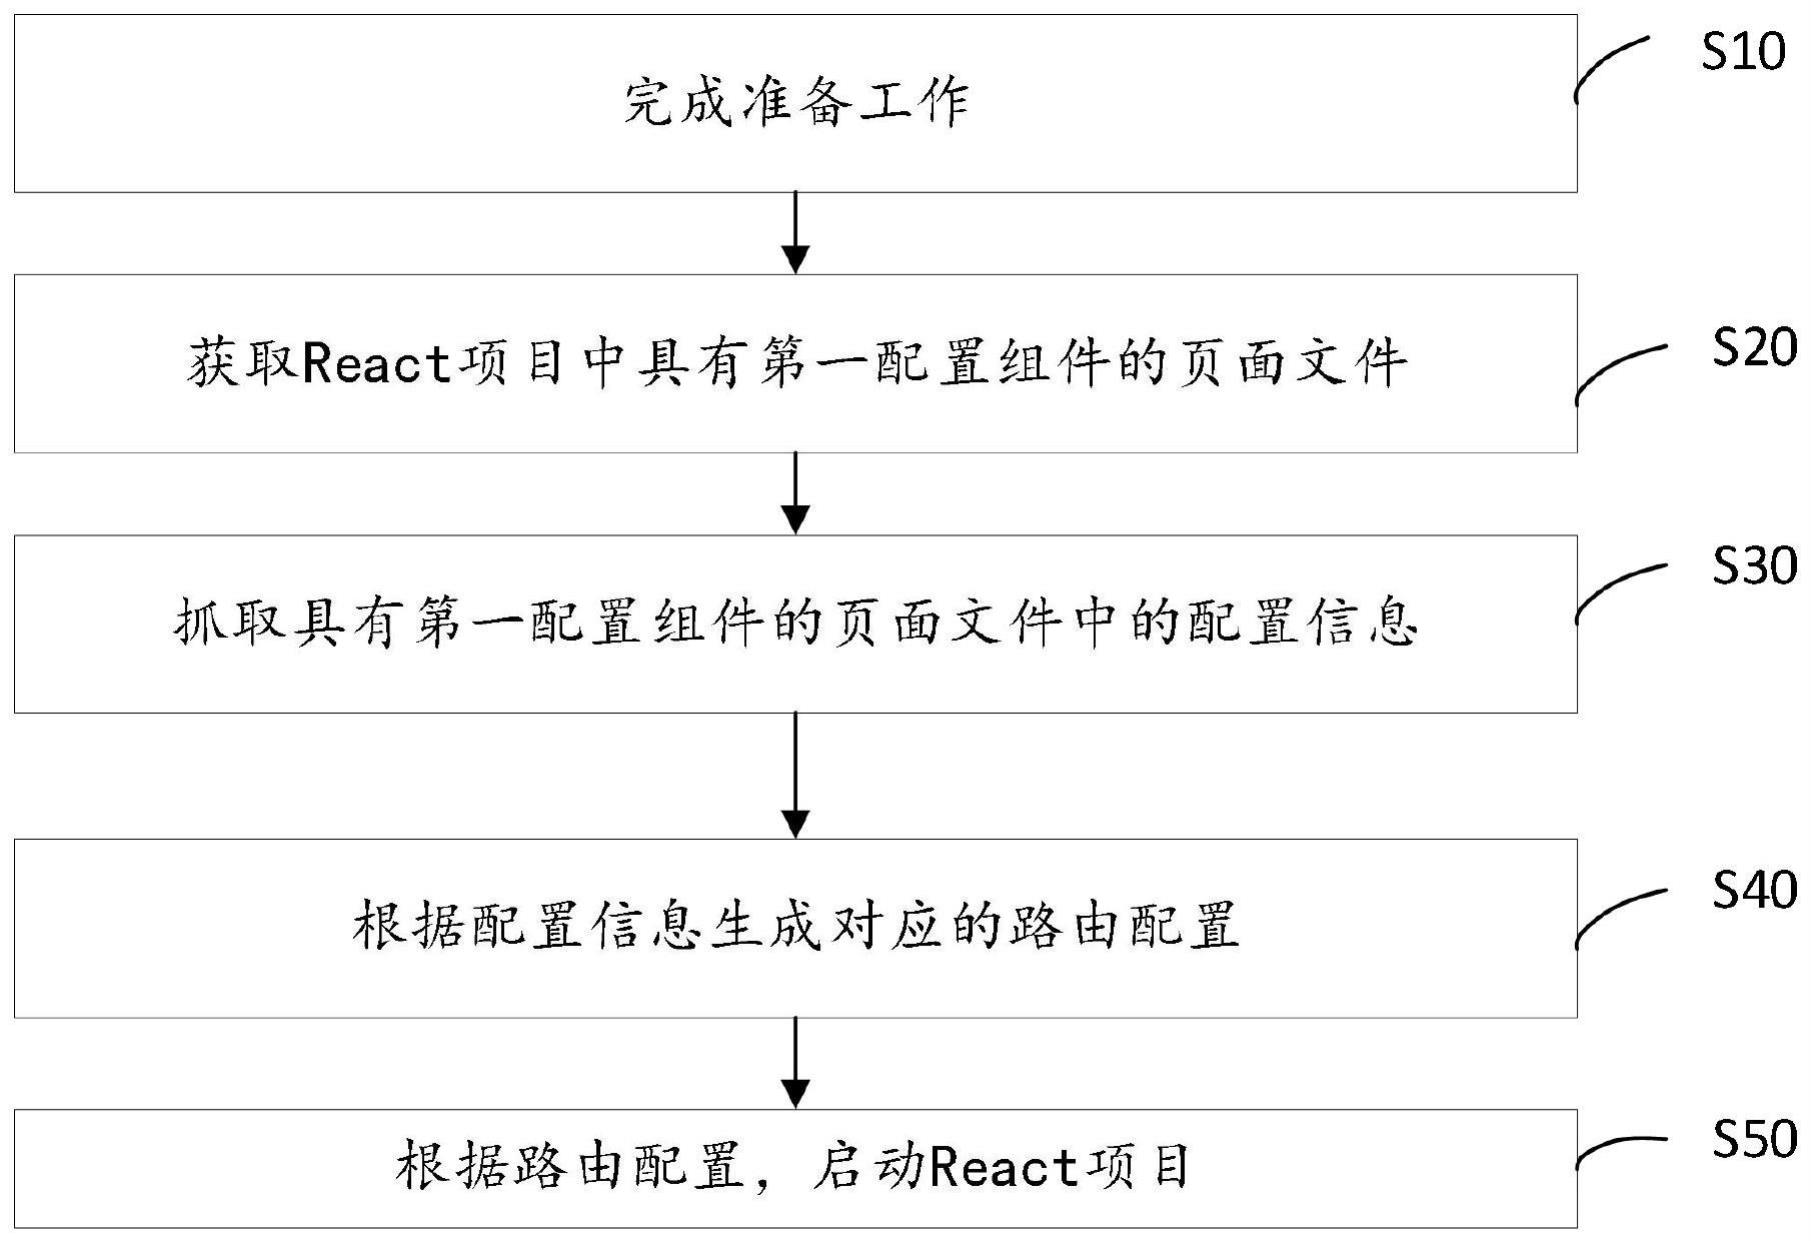 React项目配置化生成路由的方法、控制装置及存储介质与流程